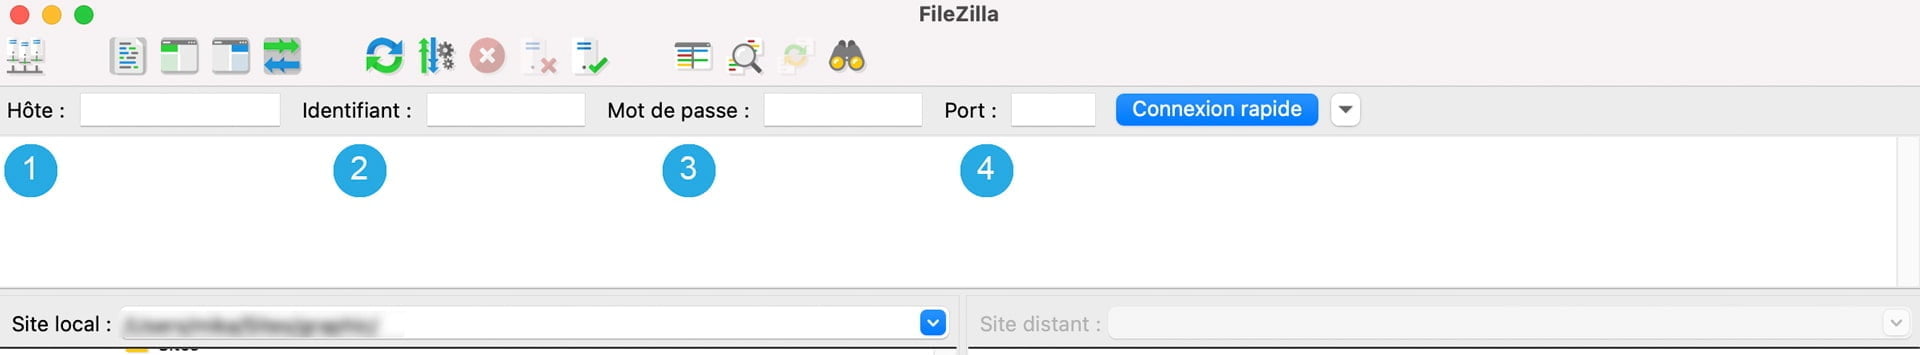 Connexion au serveur du site via FileZilla en utilisant la fonction Connexion Rapide